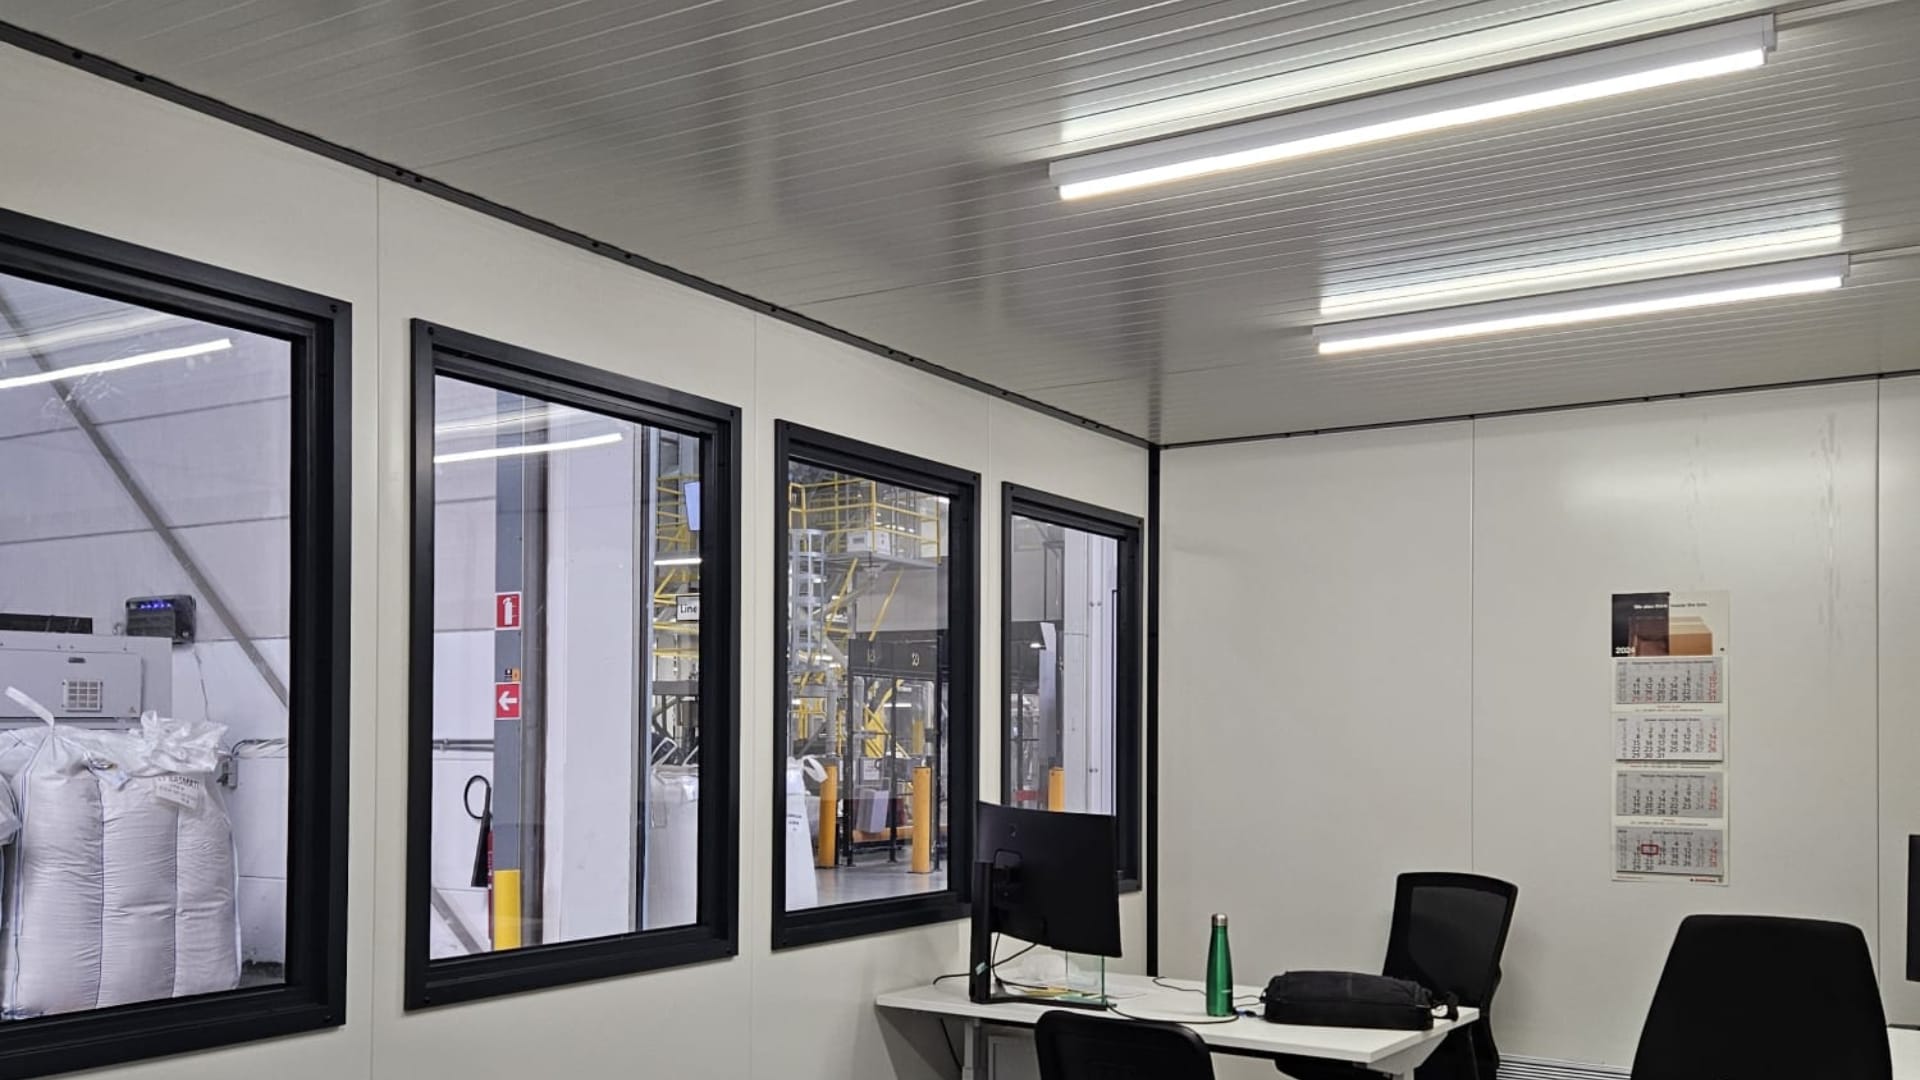 Binnenzijde kantoorunit Smart inclusief bureau en verlichting. Prefab geleverd voor opbouw op locatie